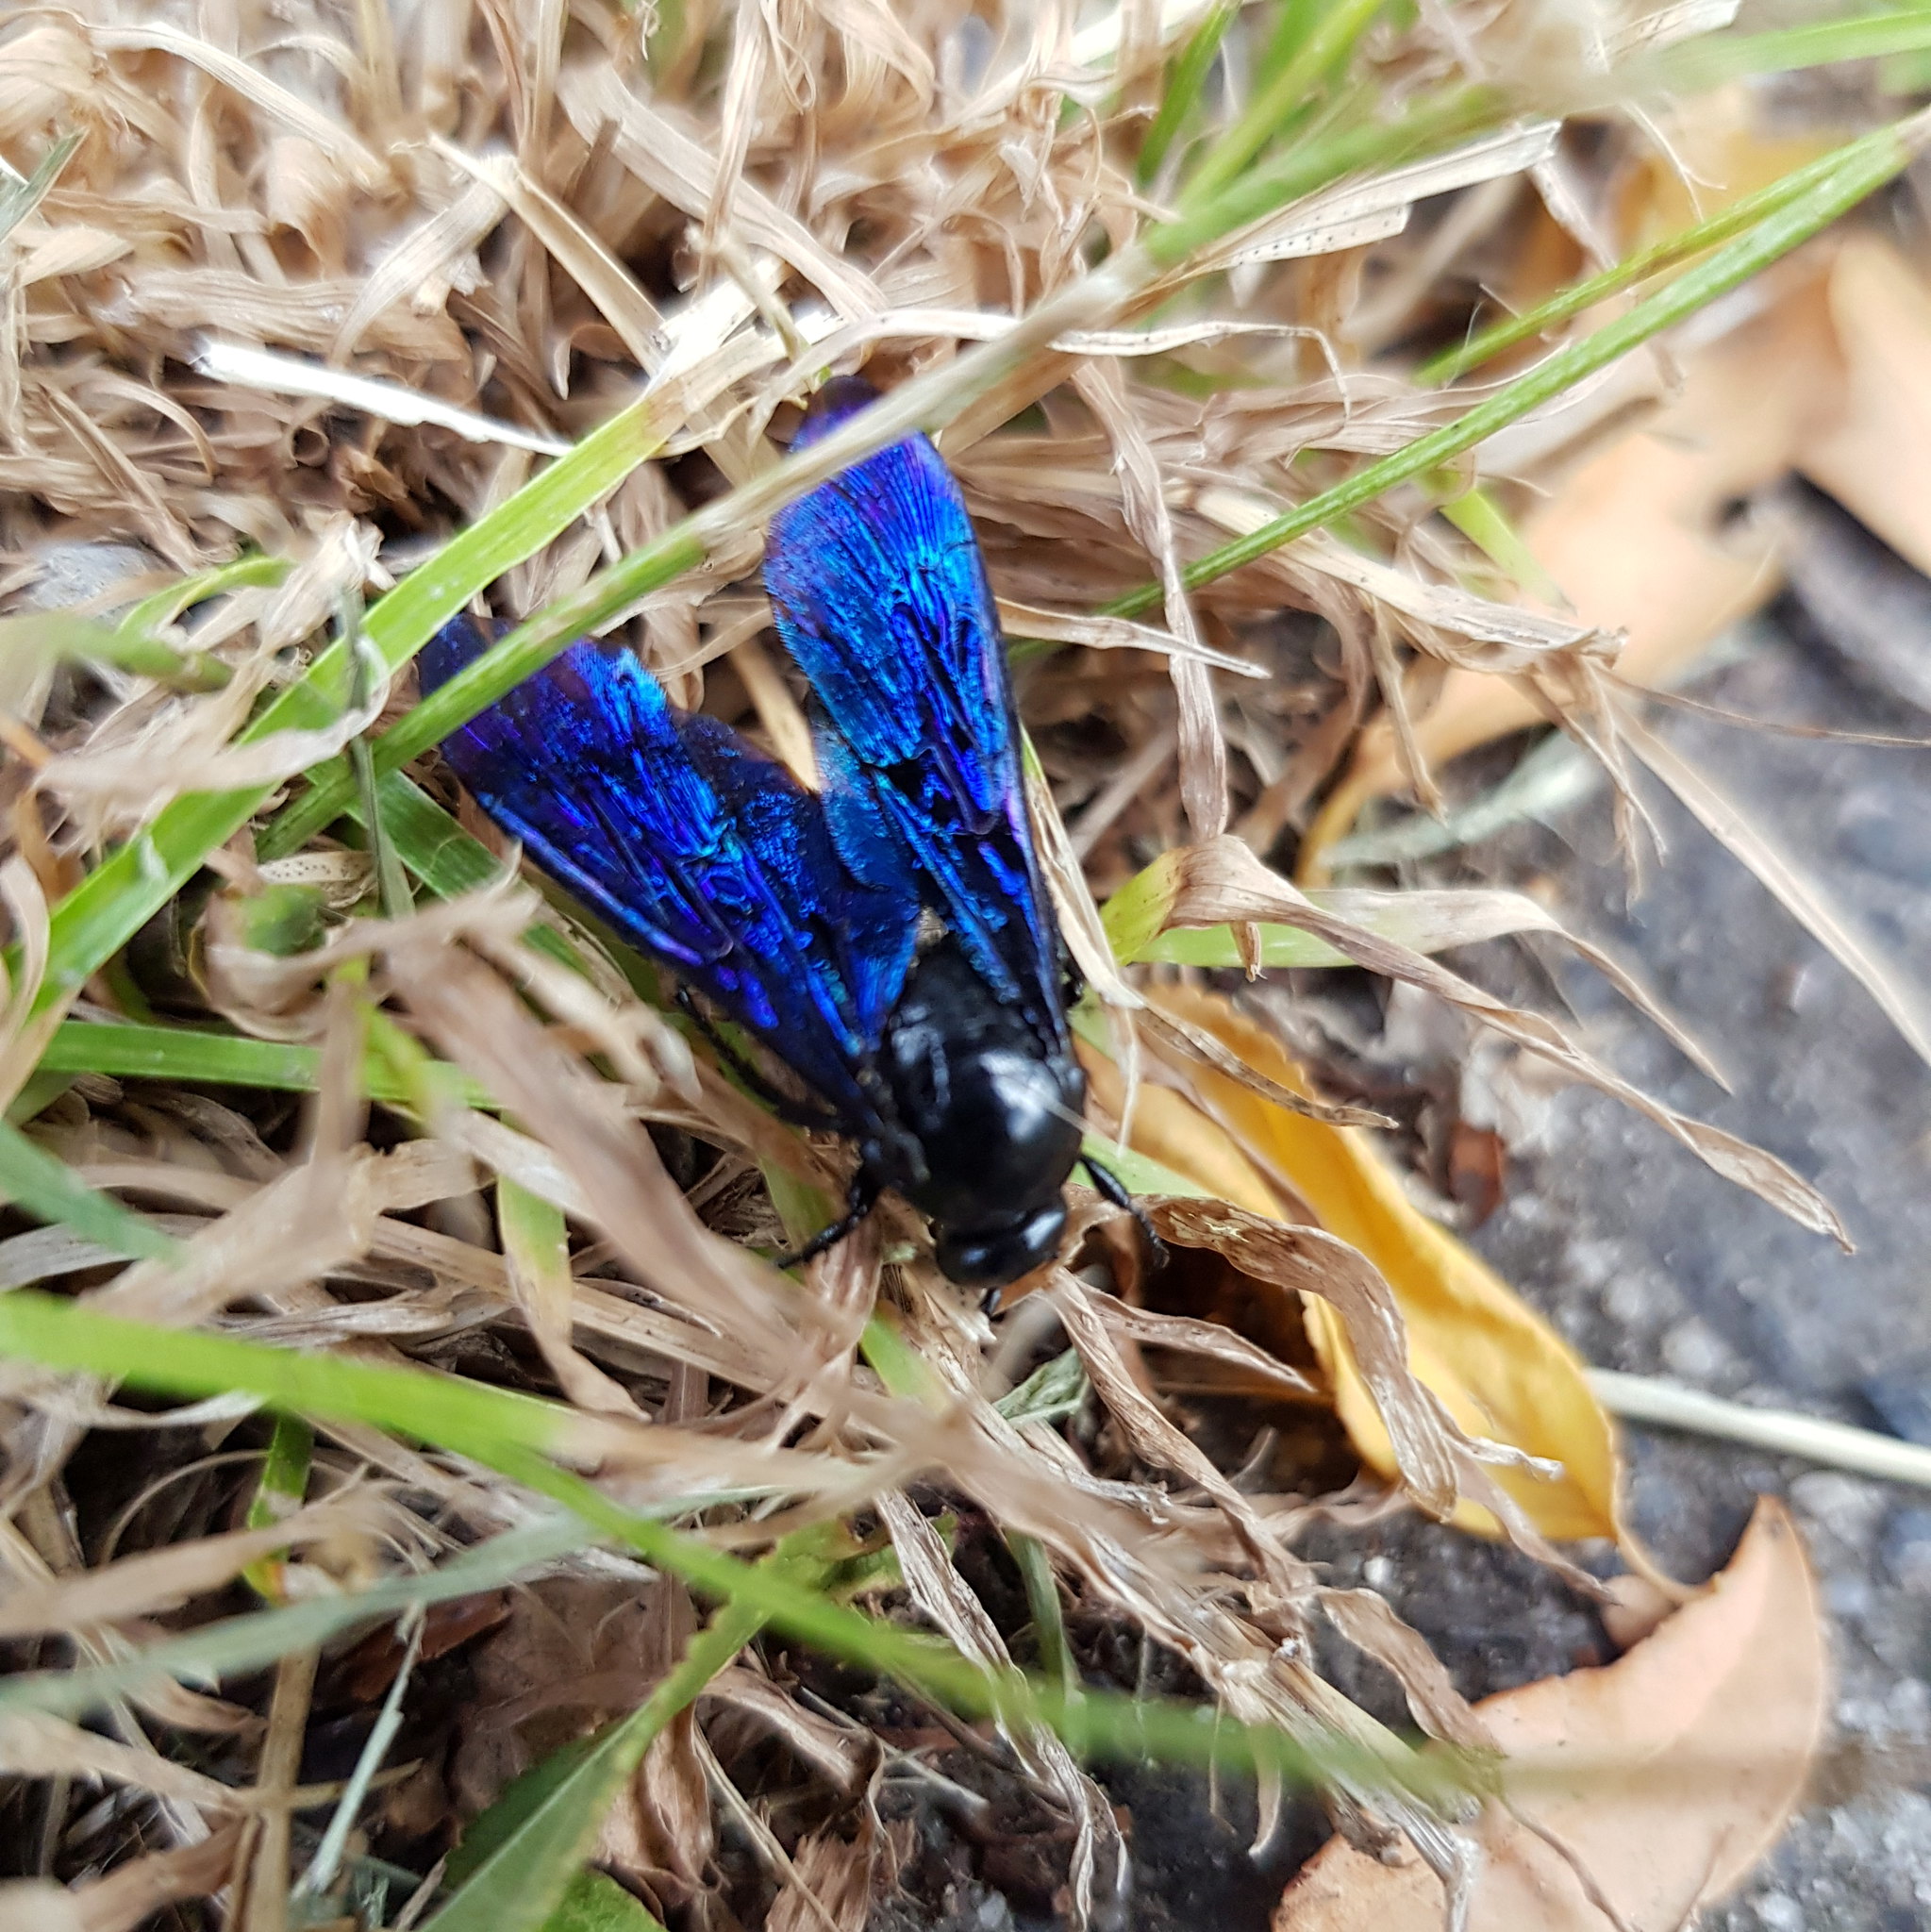 Blue flower wasp in the garden